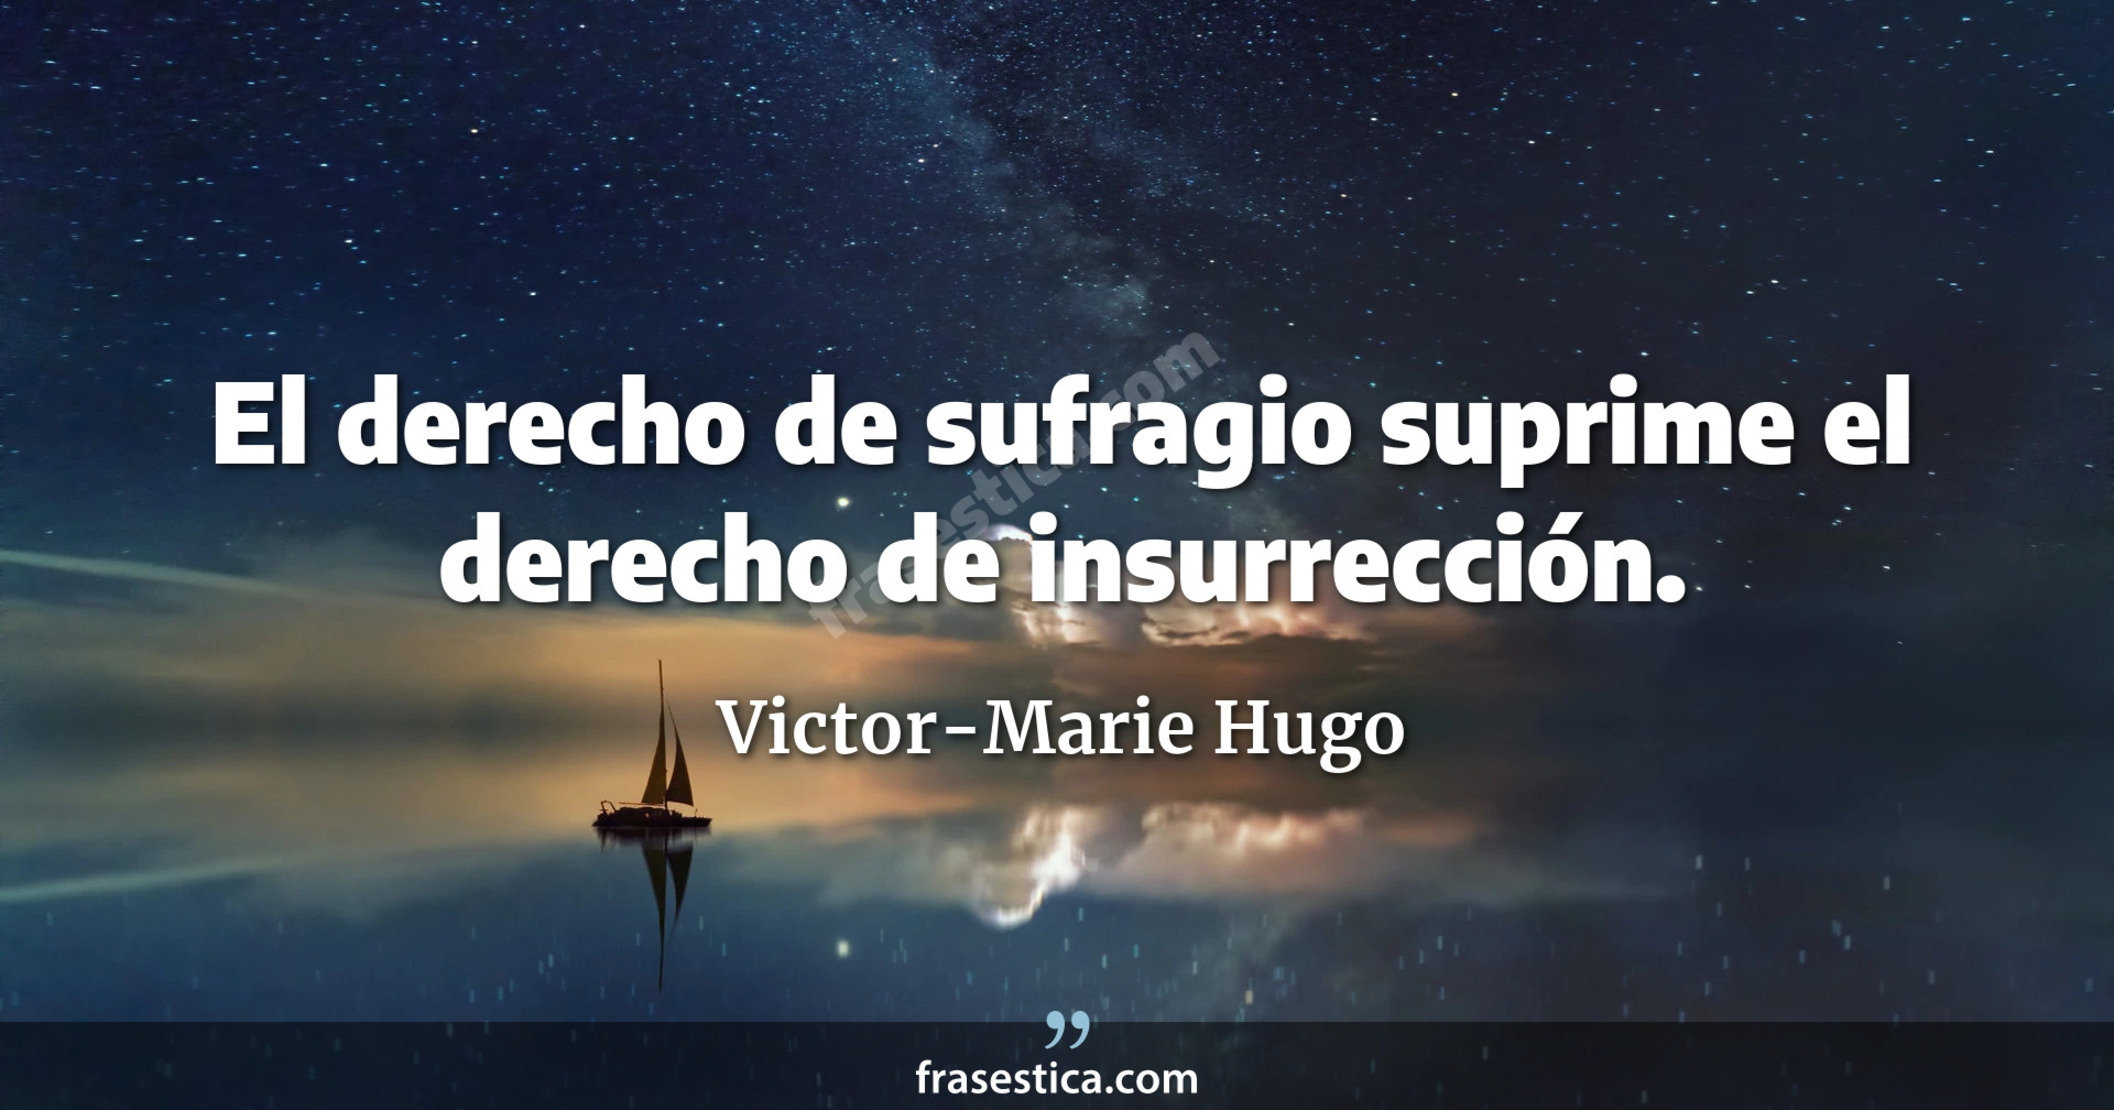 El derecho de sufragio suprime el derecho de insurrección. - Victor-Marie Hugo